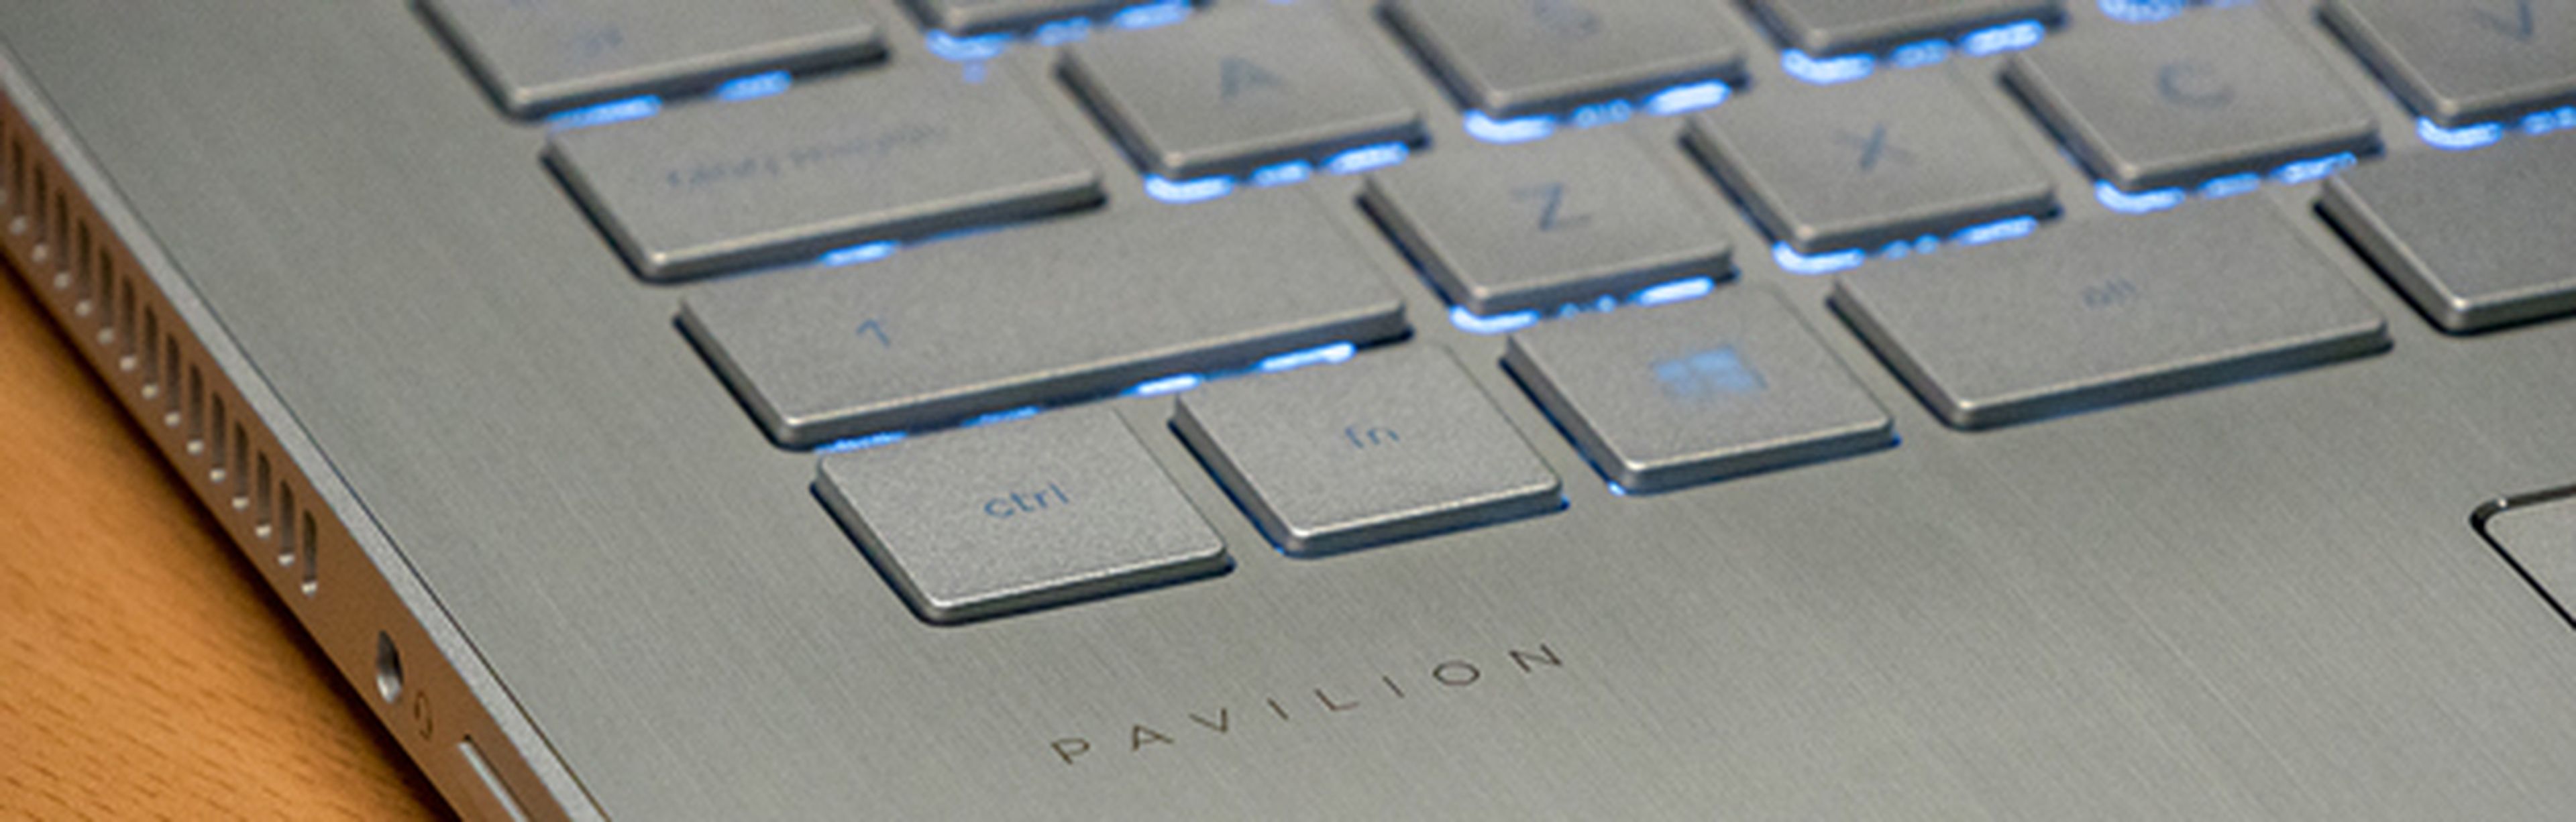 HP Pavilion x360, análisis y opinión